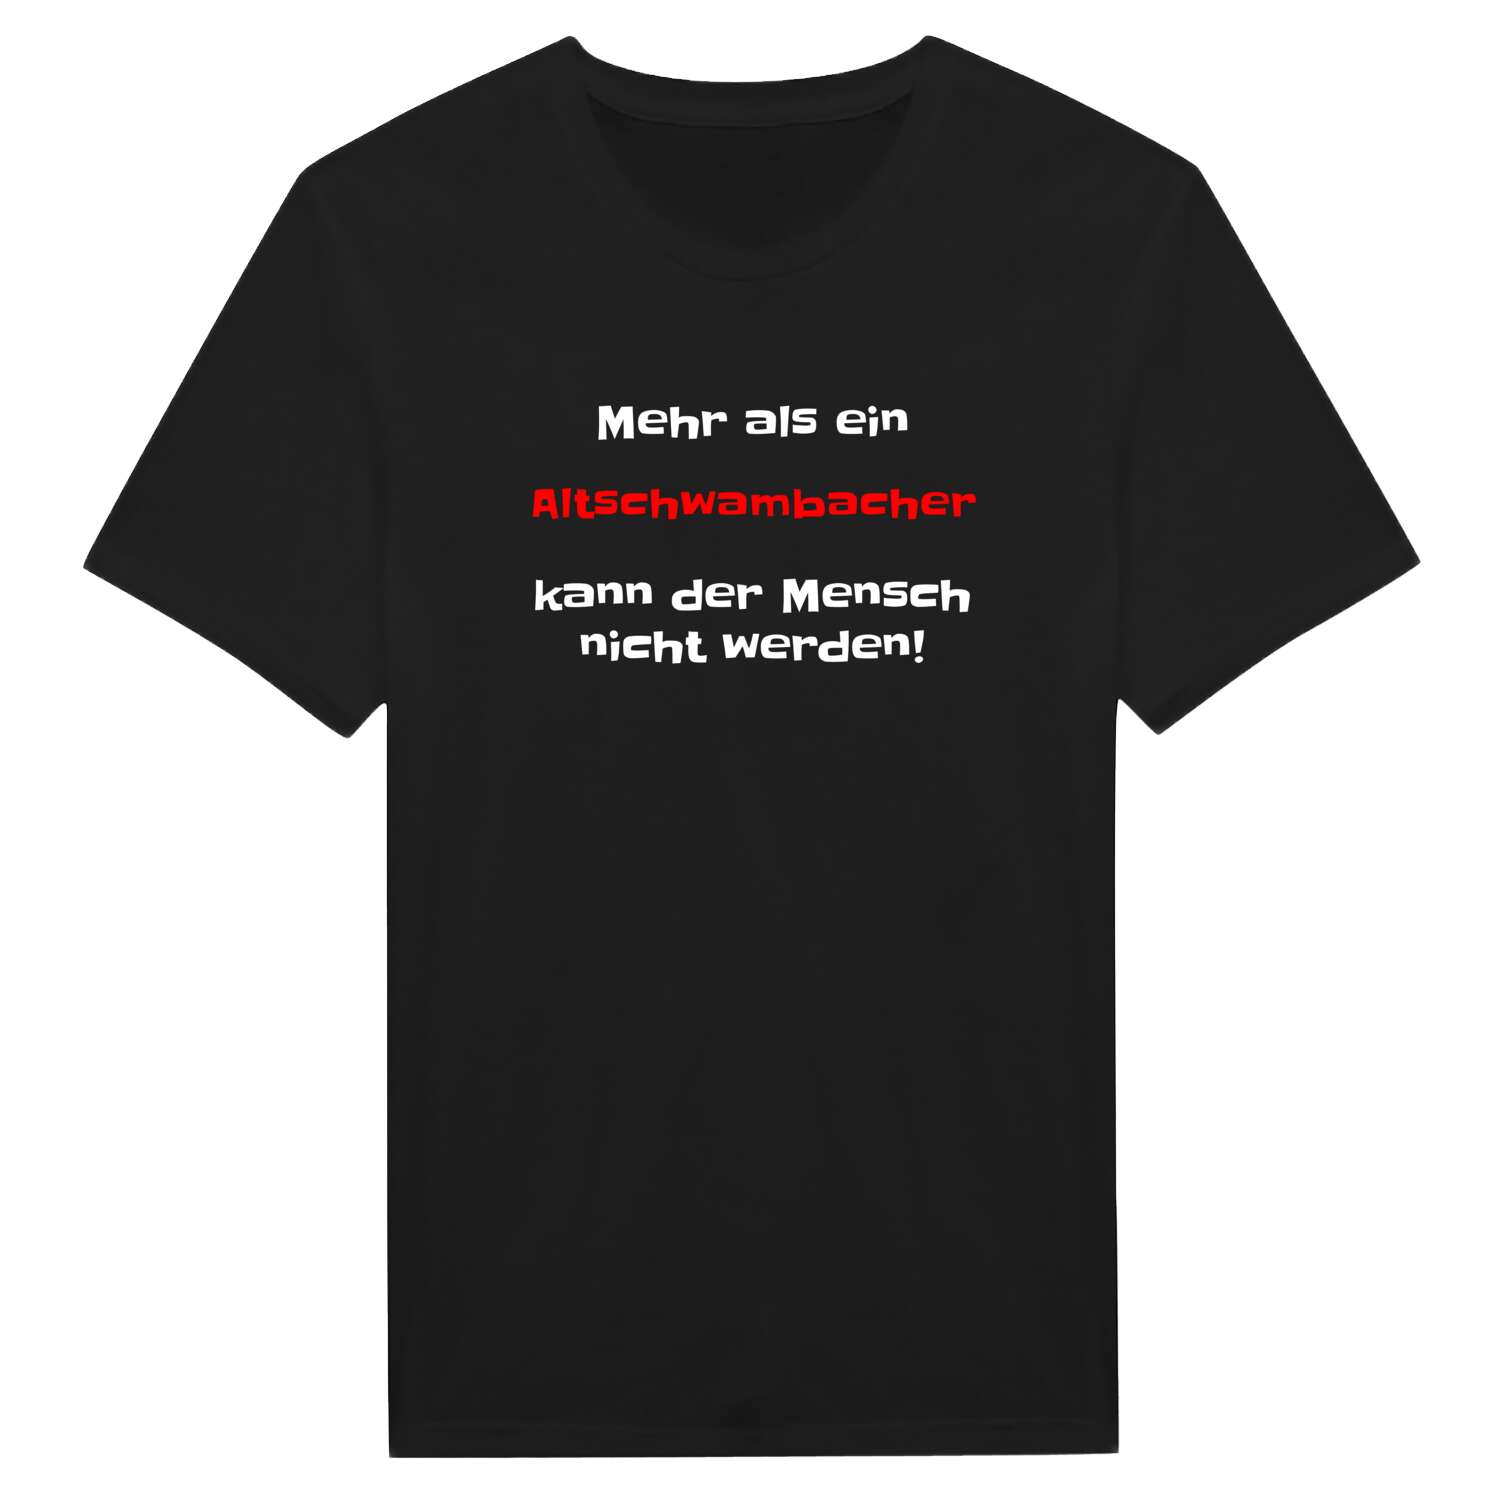 Altschwambach T-Shirt »Mehr als ein«